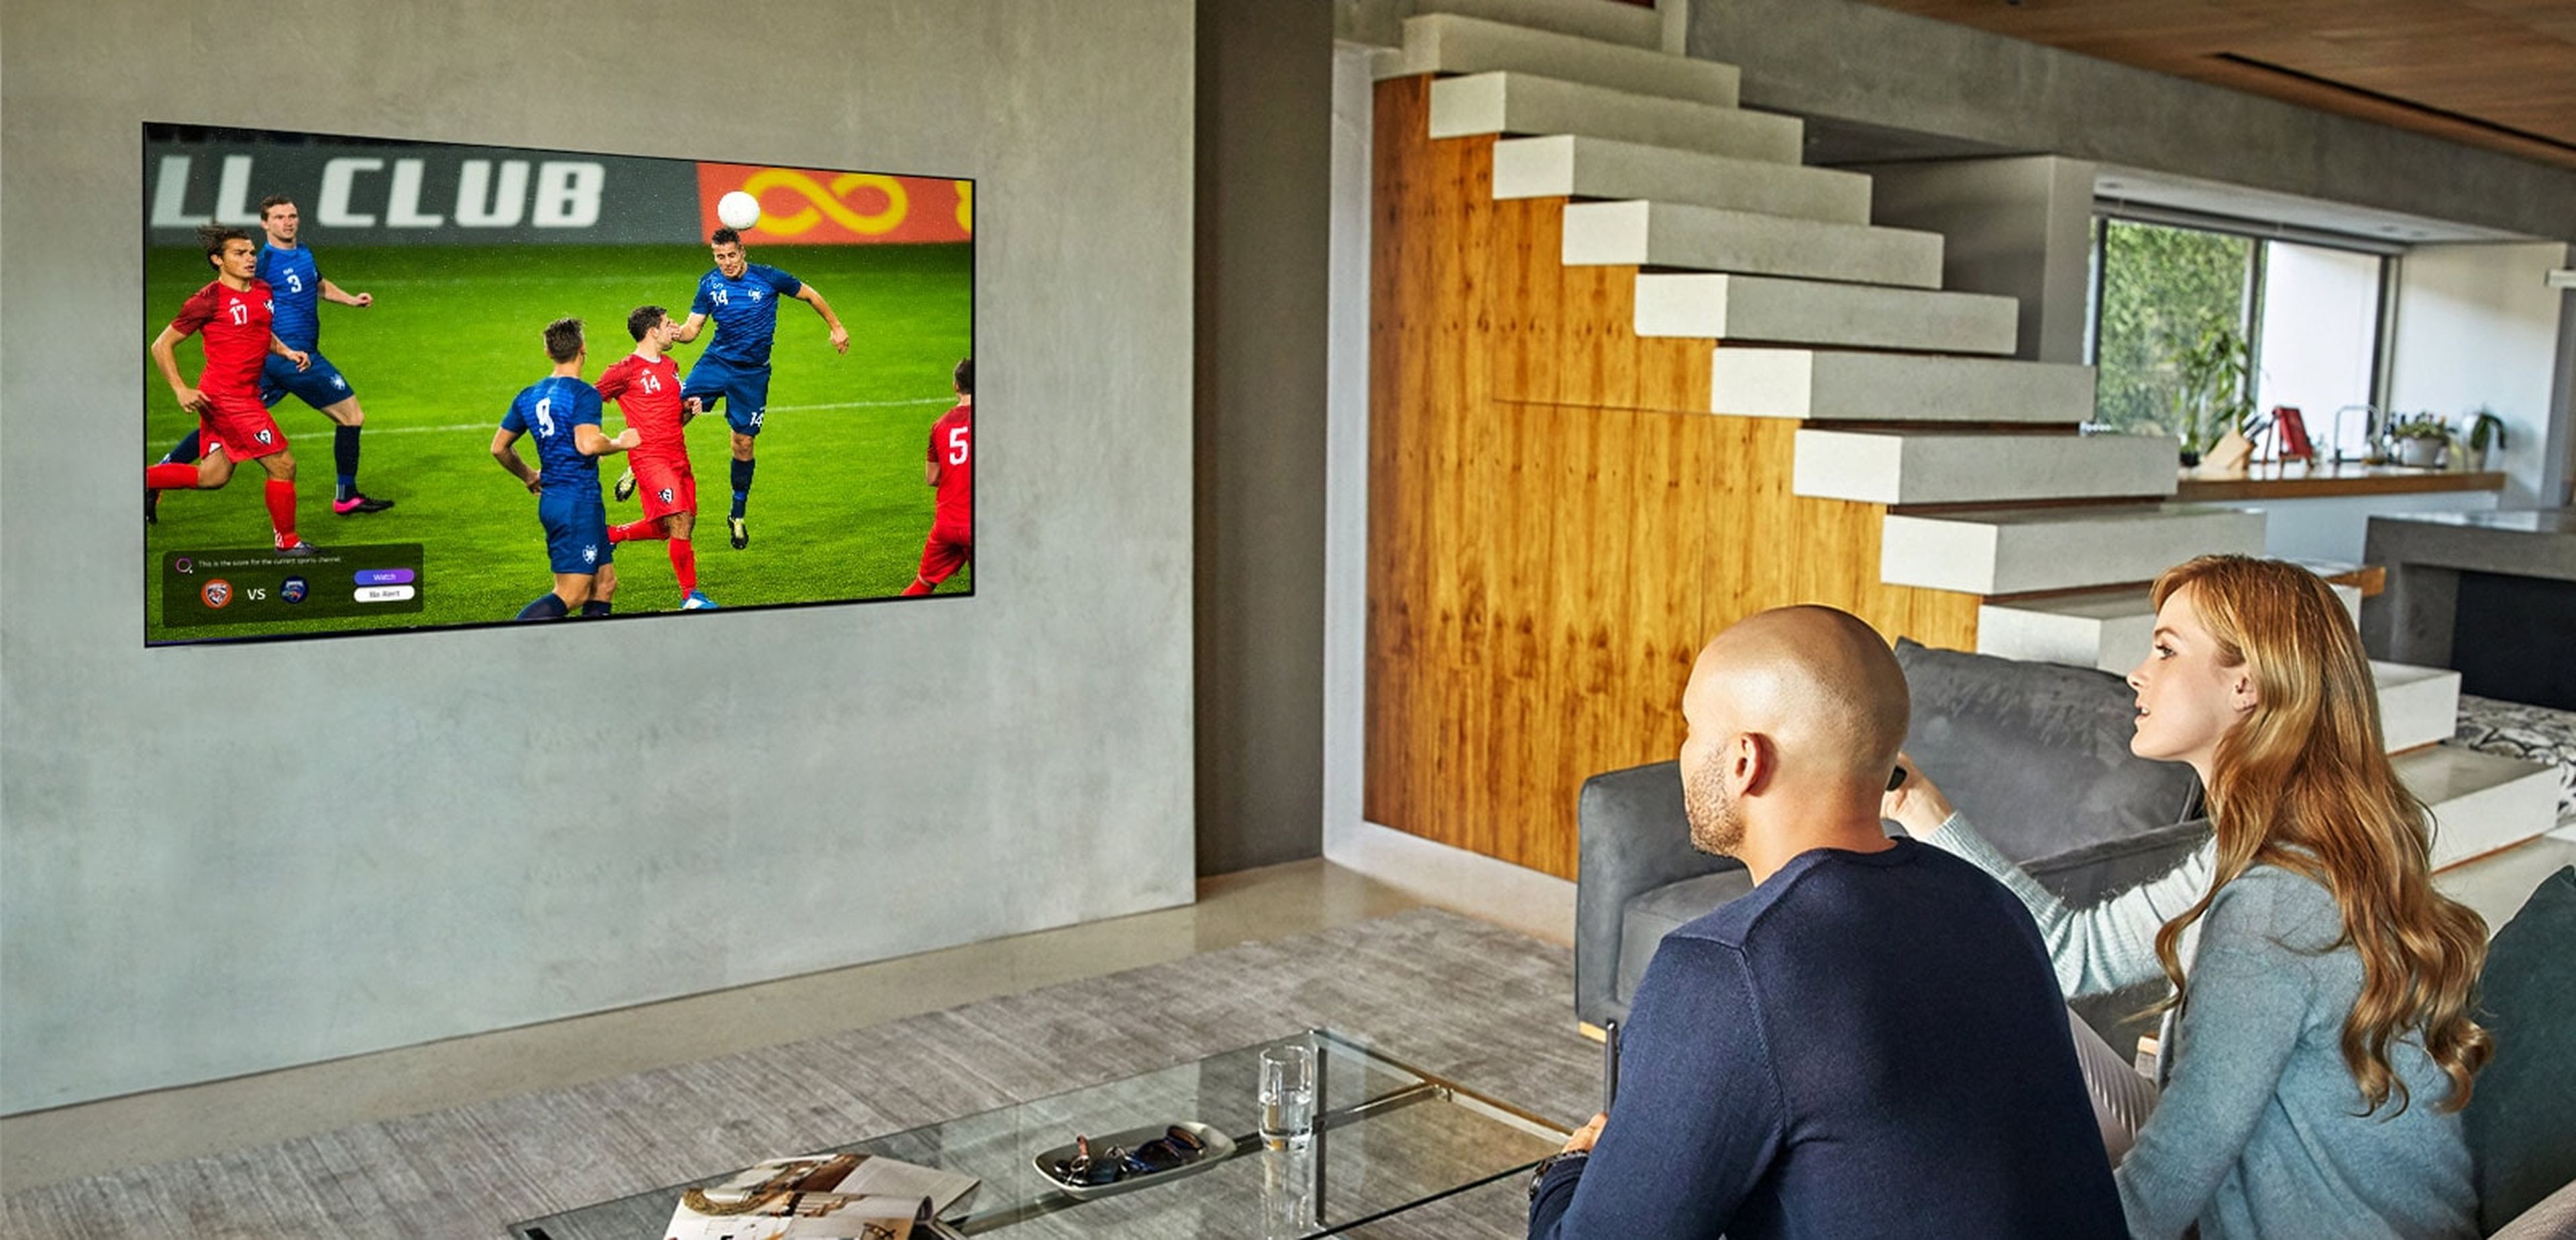 Disfruta de la Eurocopa de la manera más inteligente y con la mejor calidad de imagen con los televisores de LG